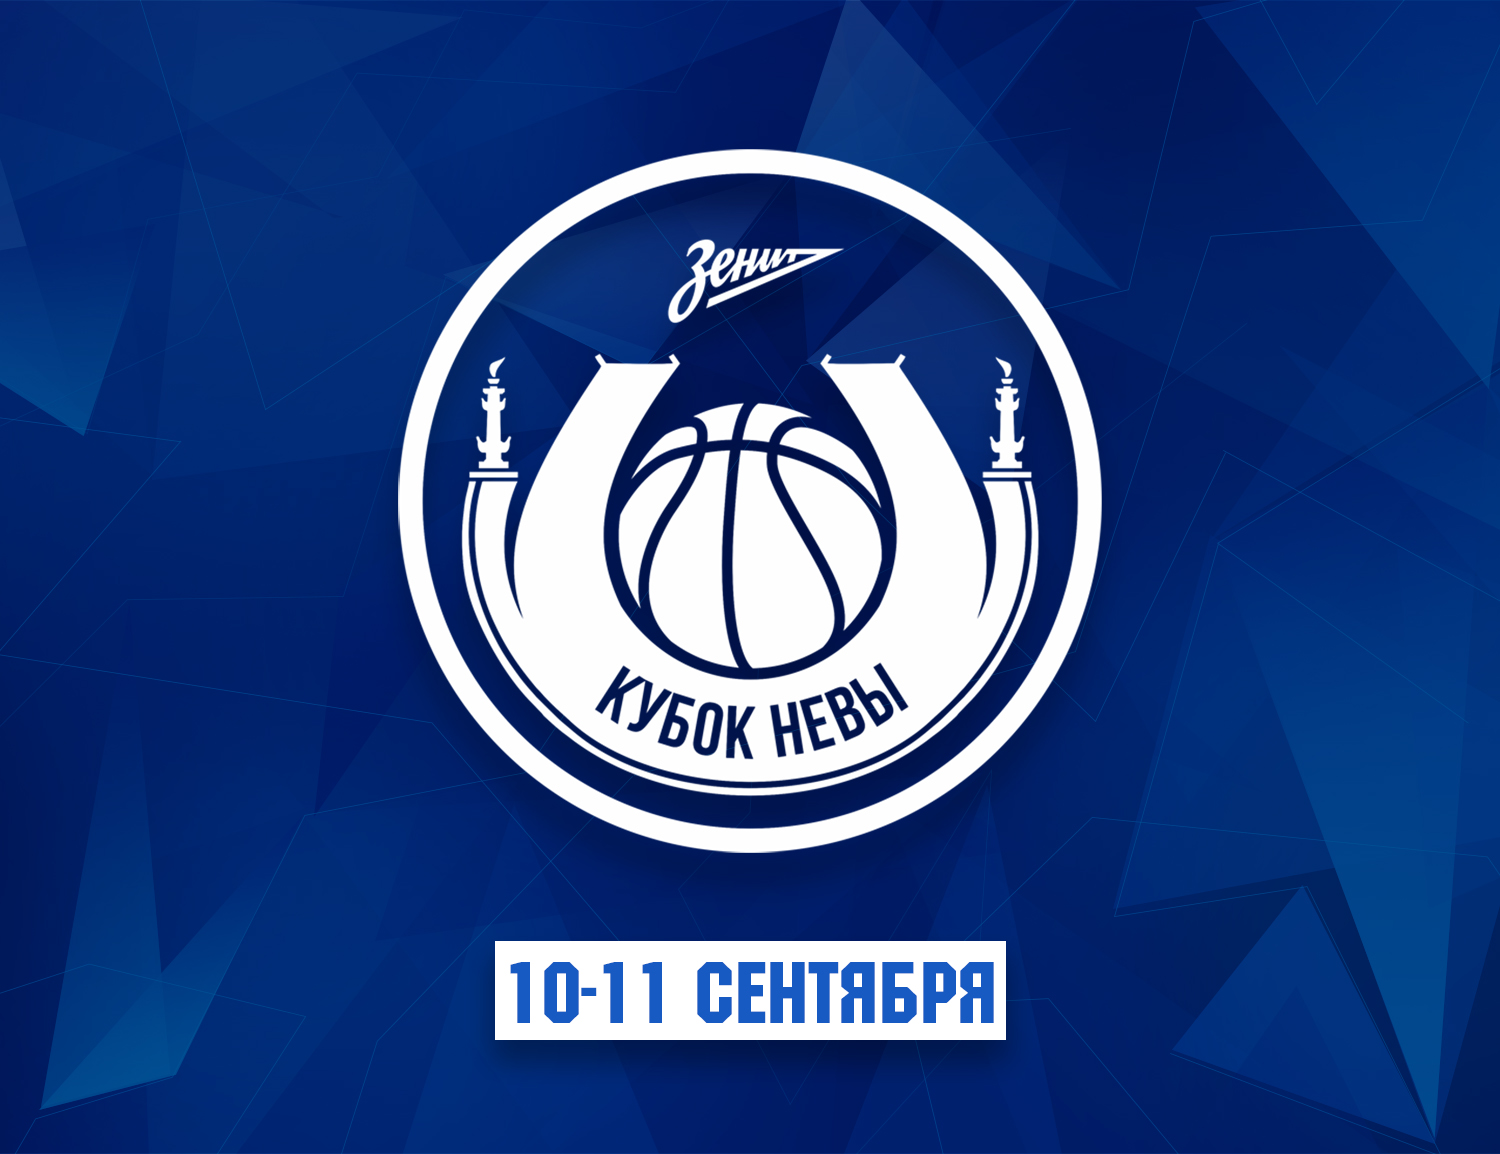 Neva Cup to be held in Saint Petersburg